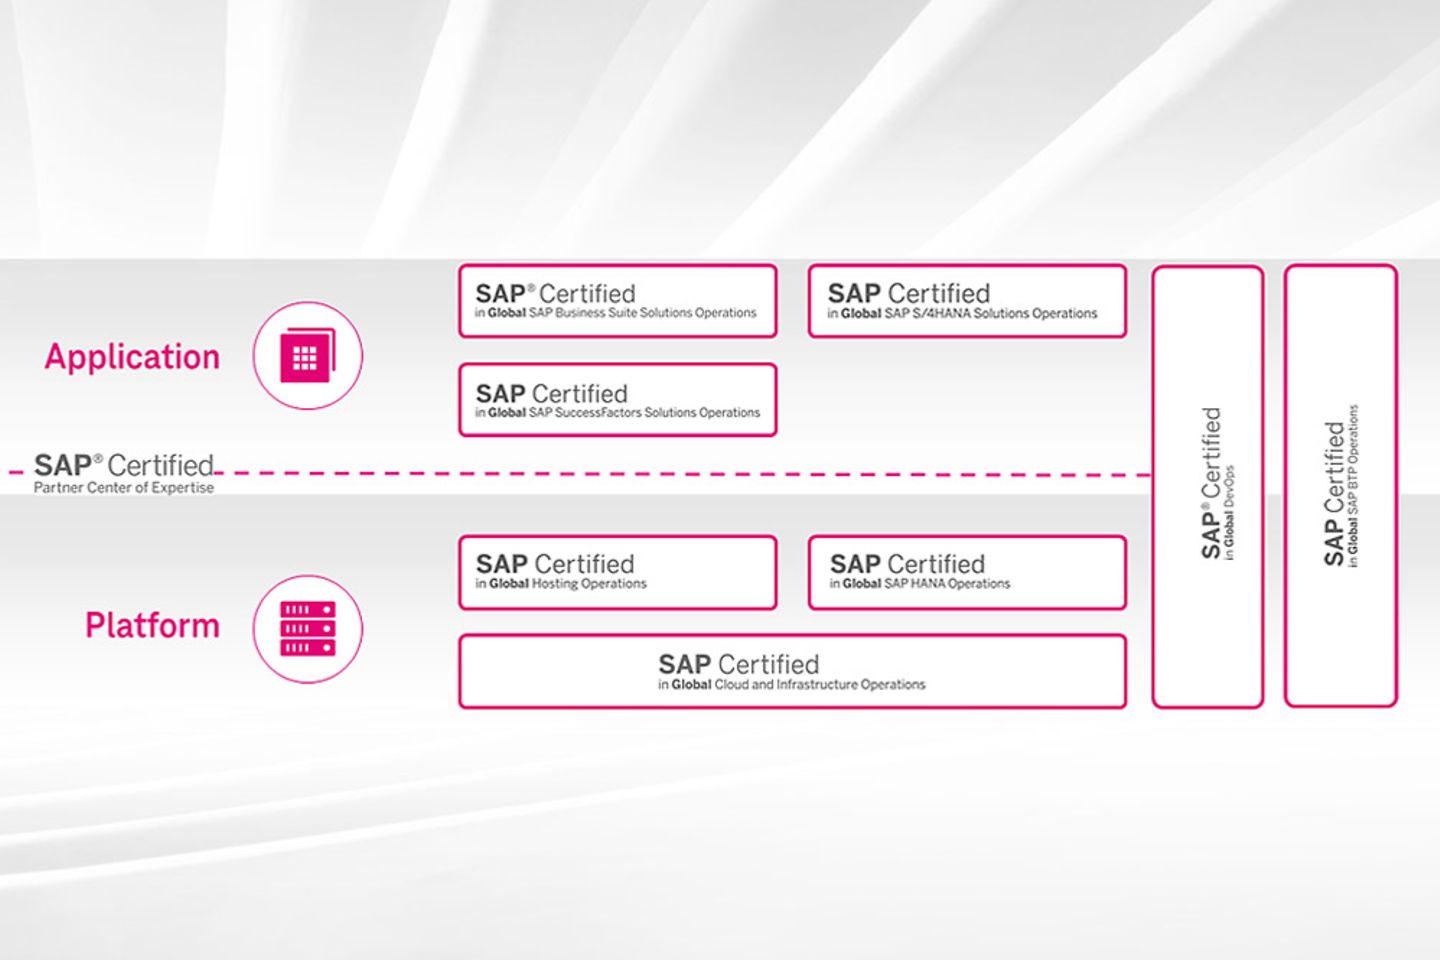 Infográfico com visão geral sobre os certificados SAP